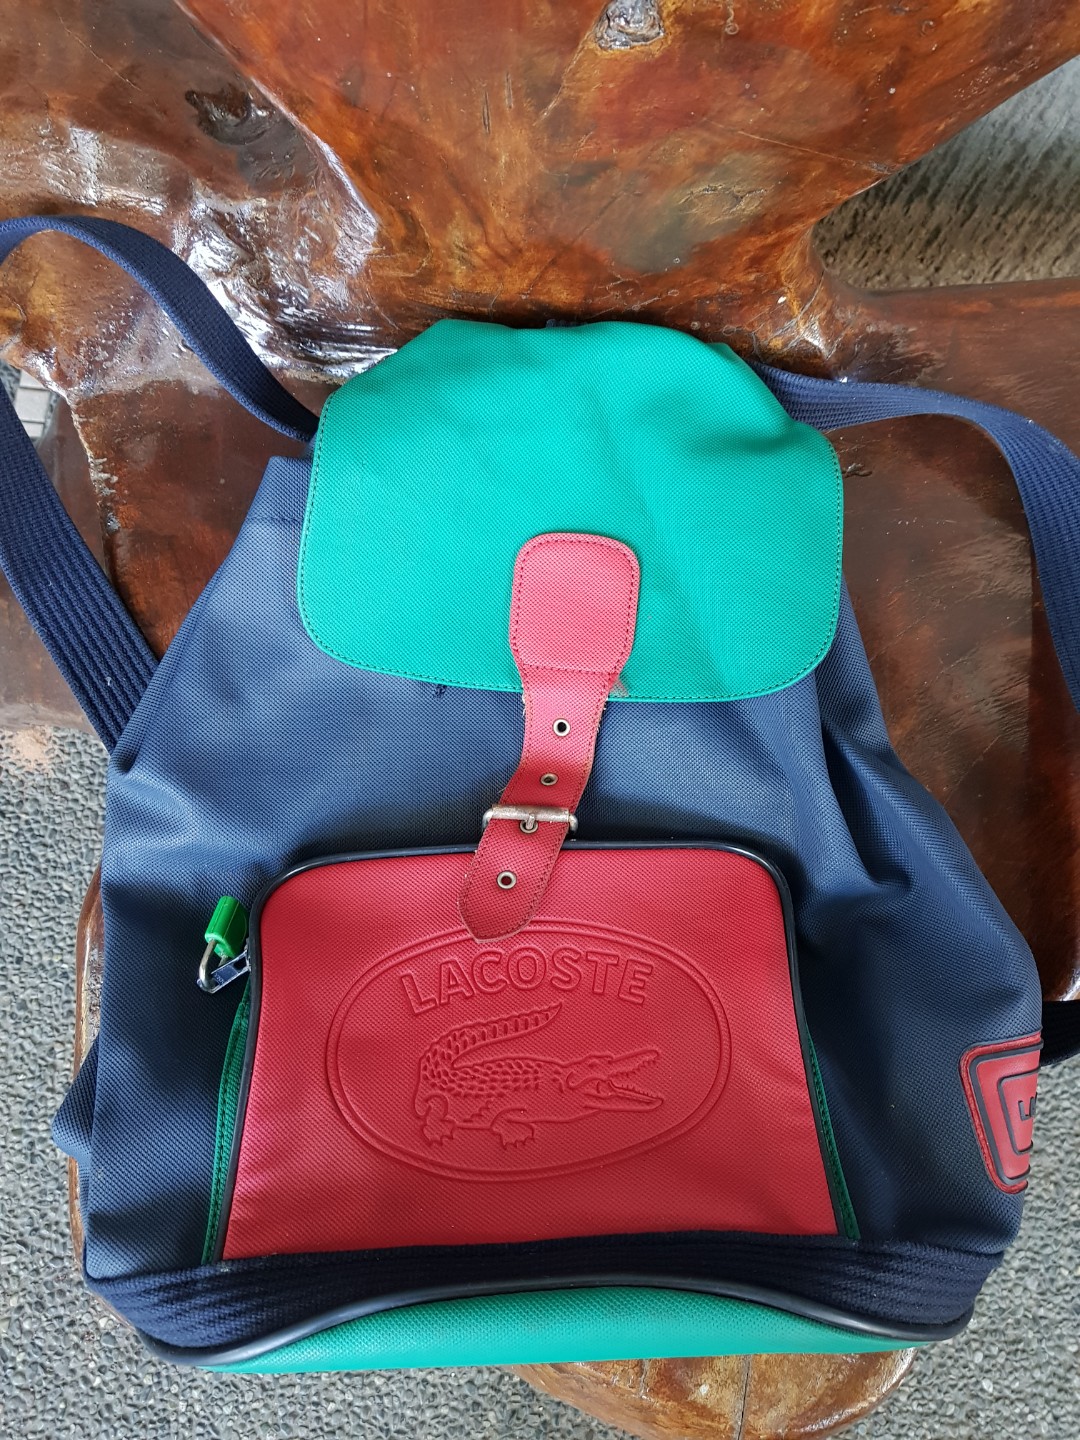 Vintage Lacoste Backpack 